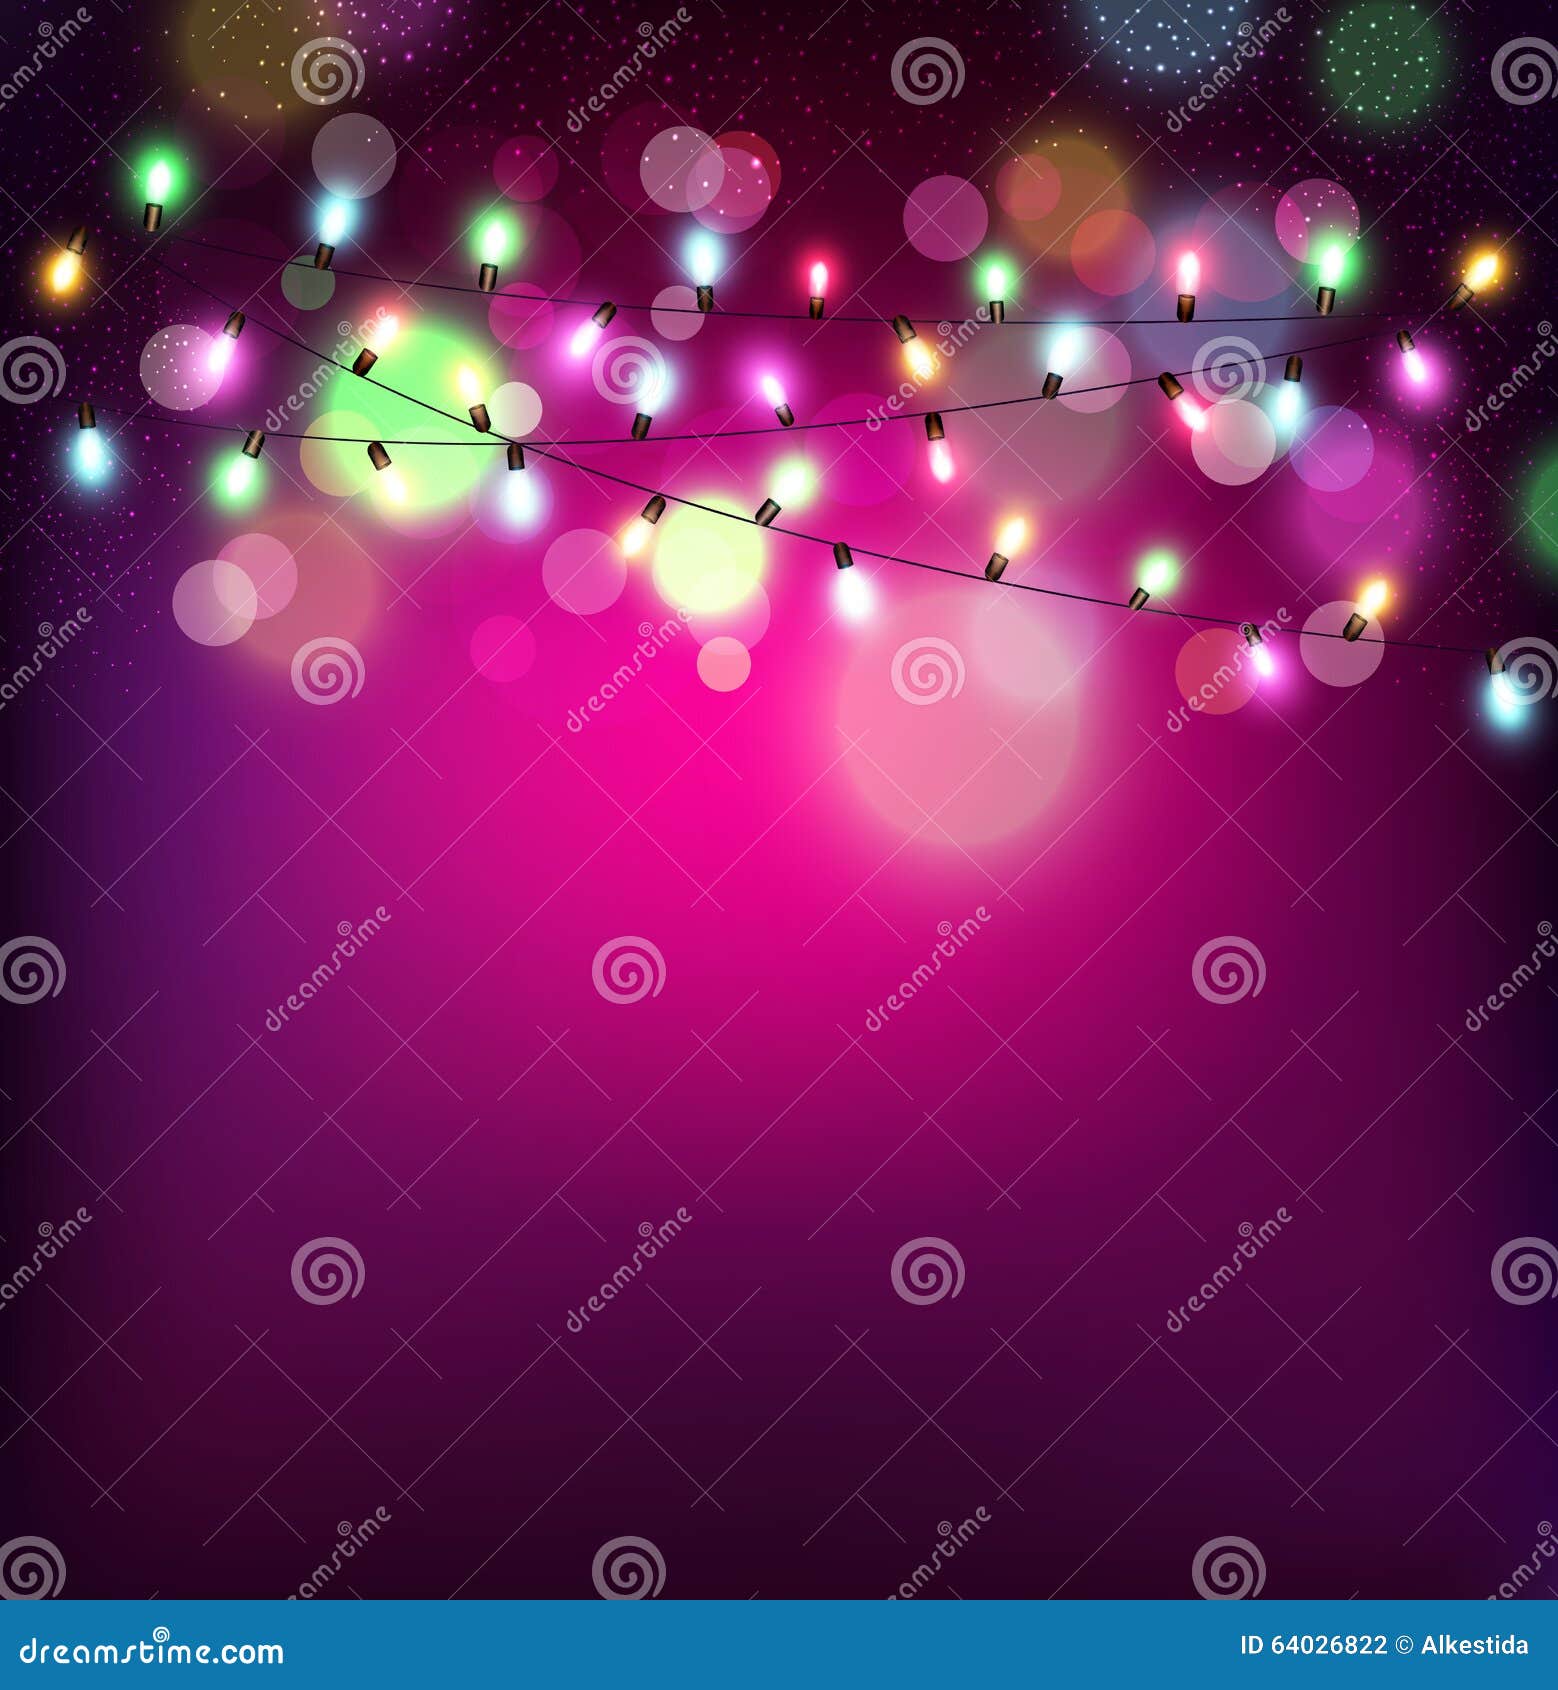  festive background of luminous garlands of light bulbs